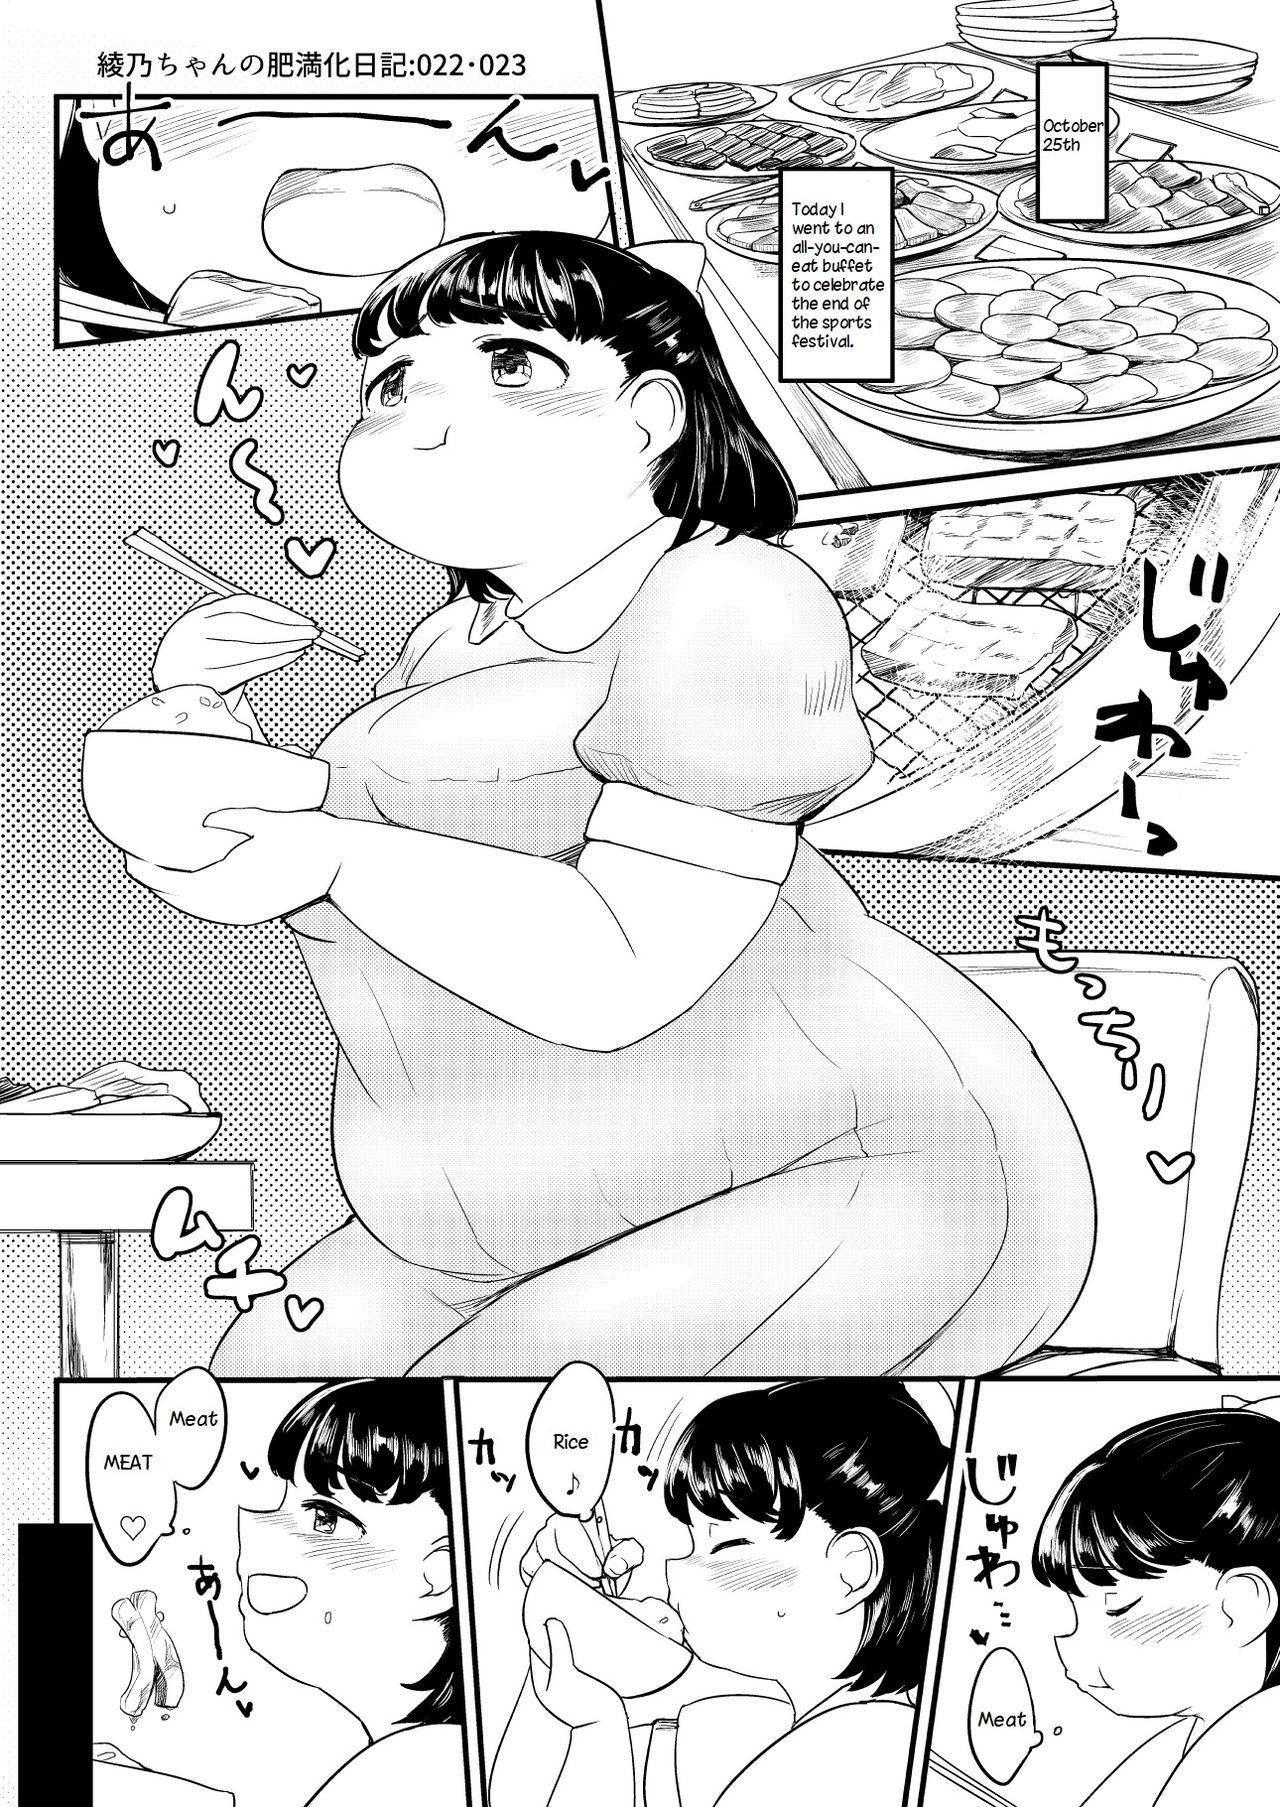 Ayano's Weight Gain Diary 21